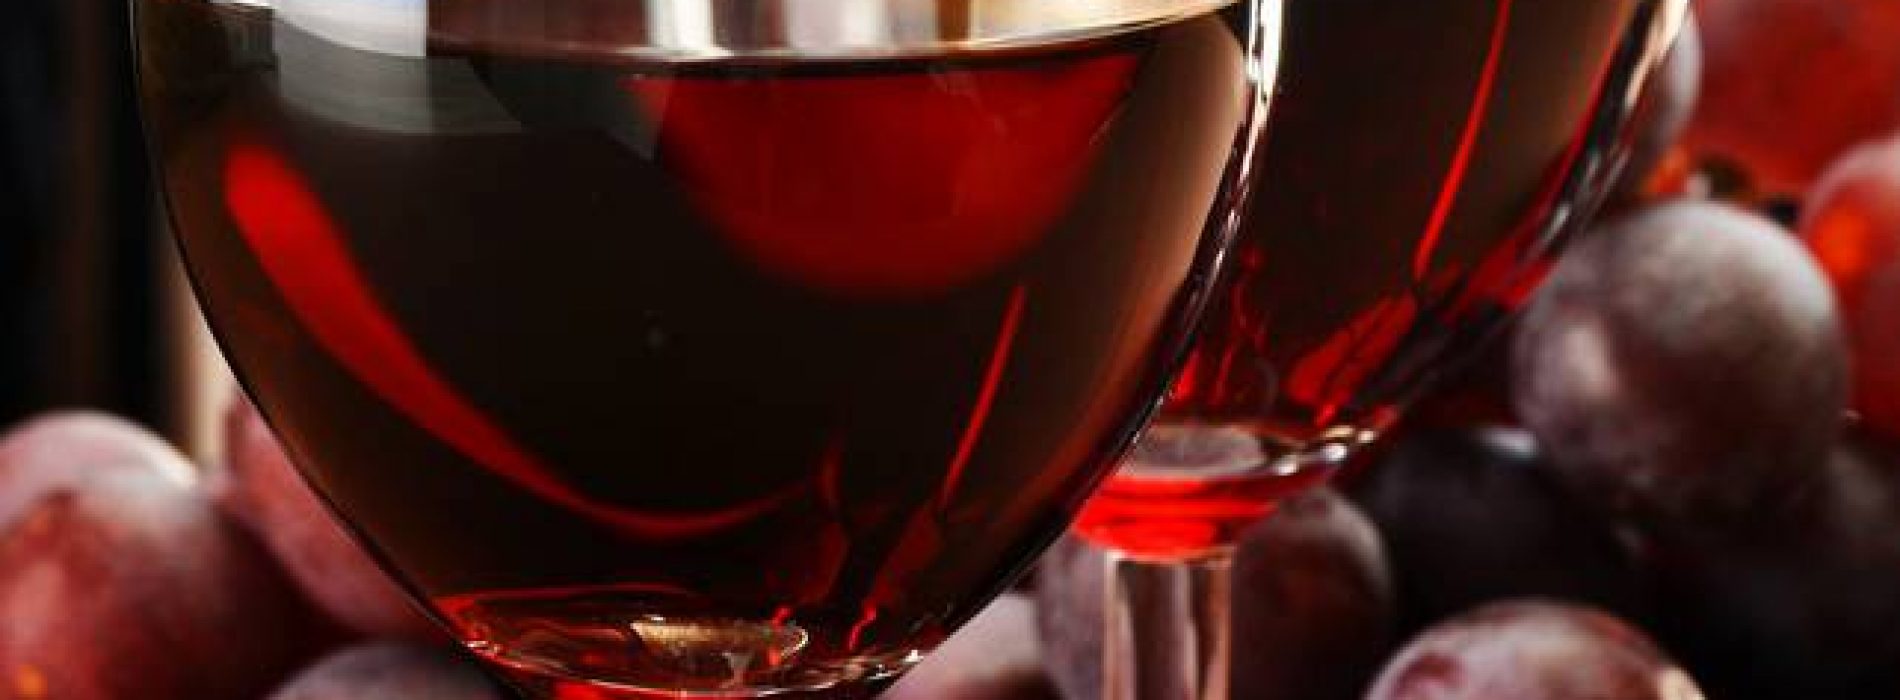 Rode wijn: goed of slecht?